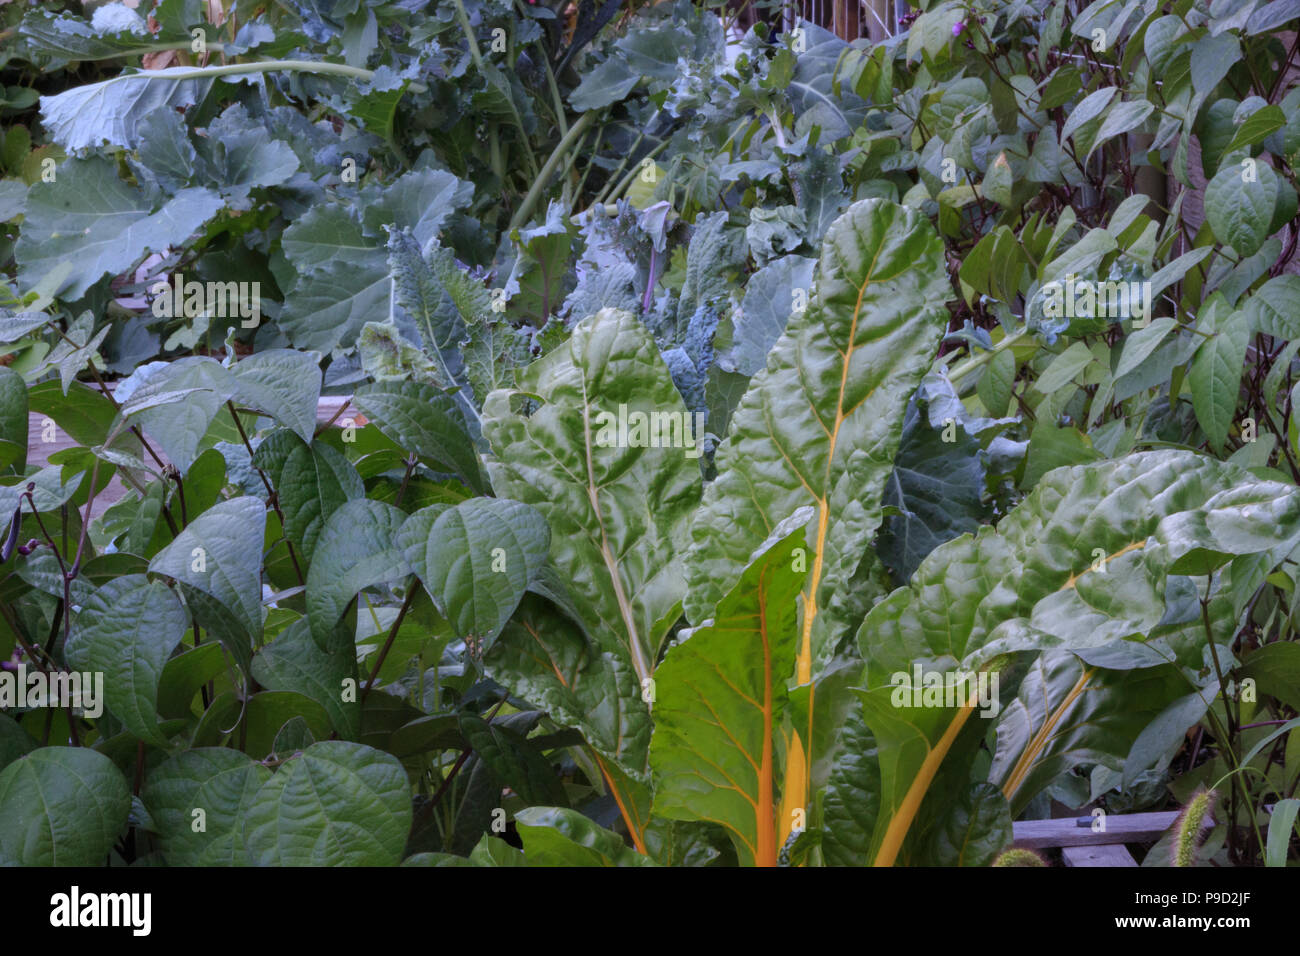 Les haricots, le chou vert, chou frisé et la bette à carde sainement en croissance à un pied carré jardin. Banque D'Images